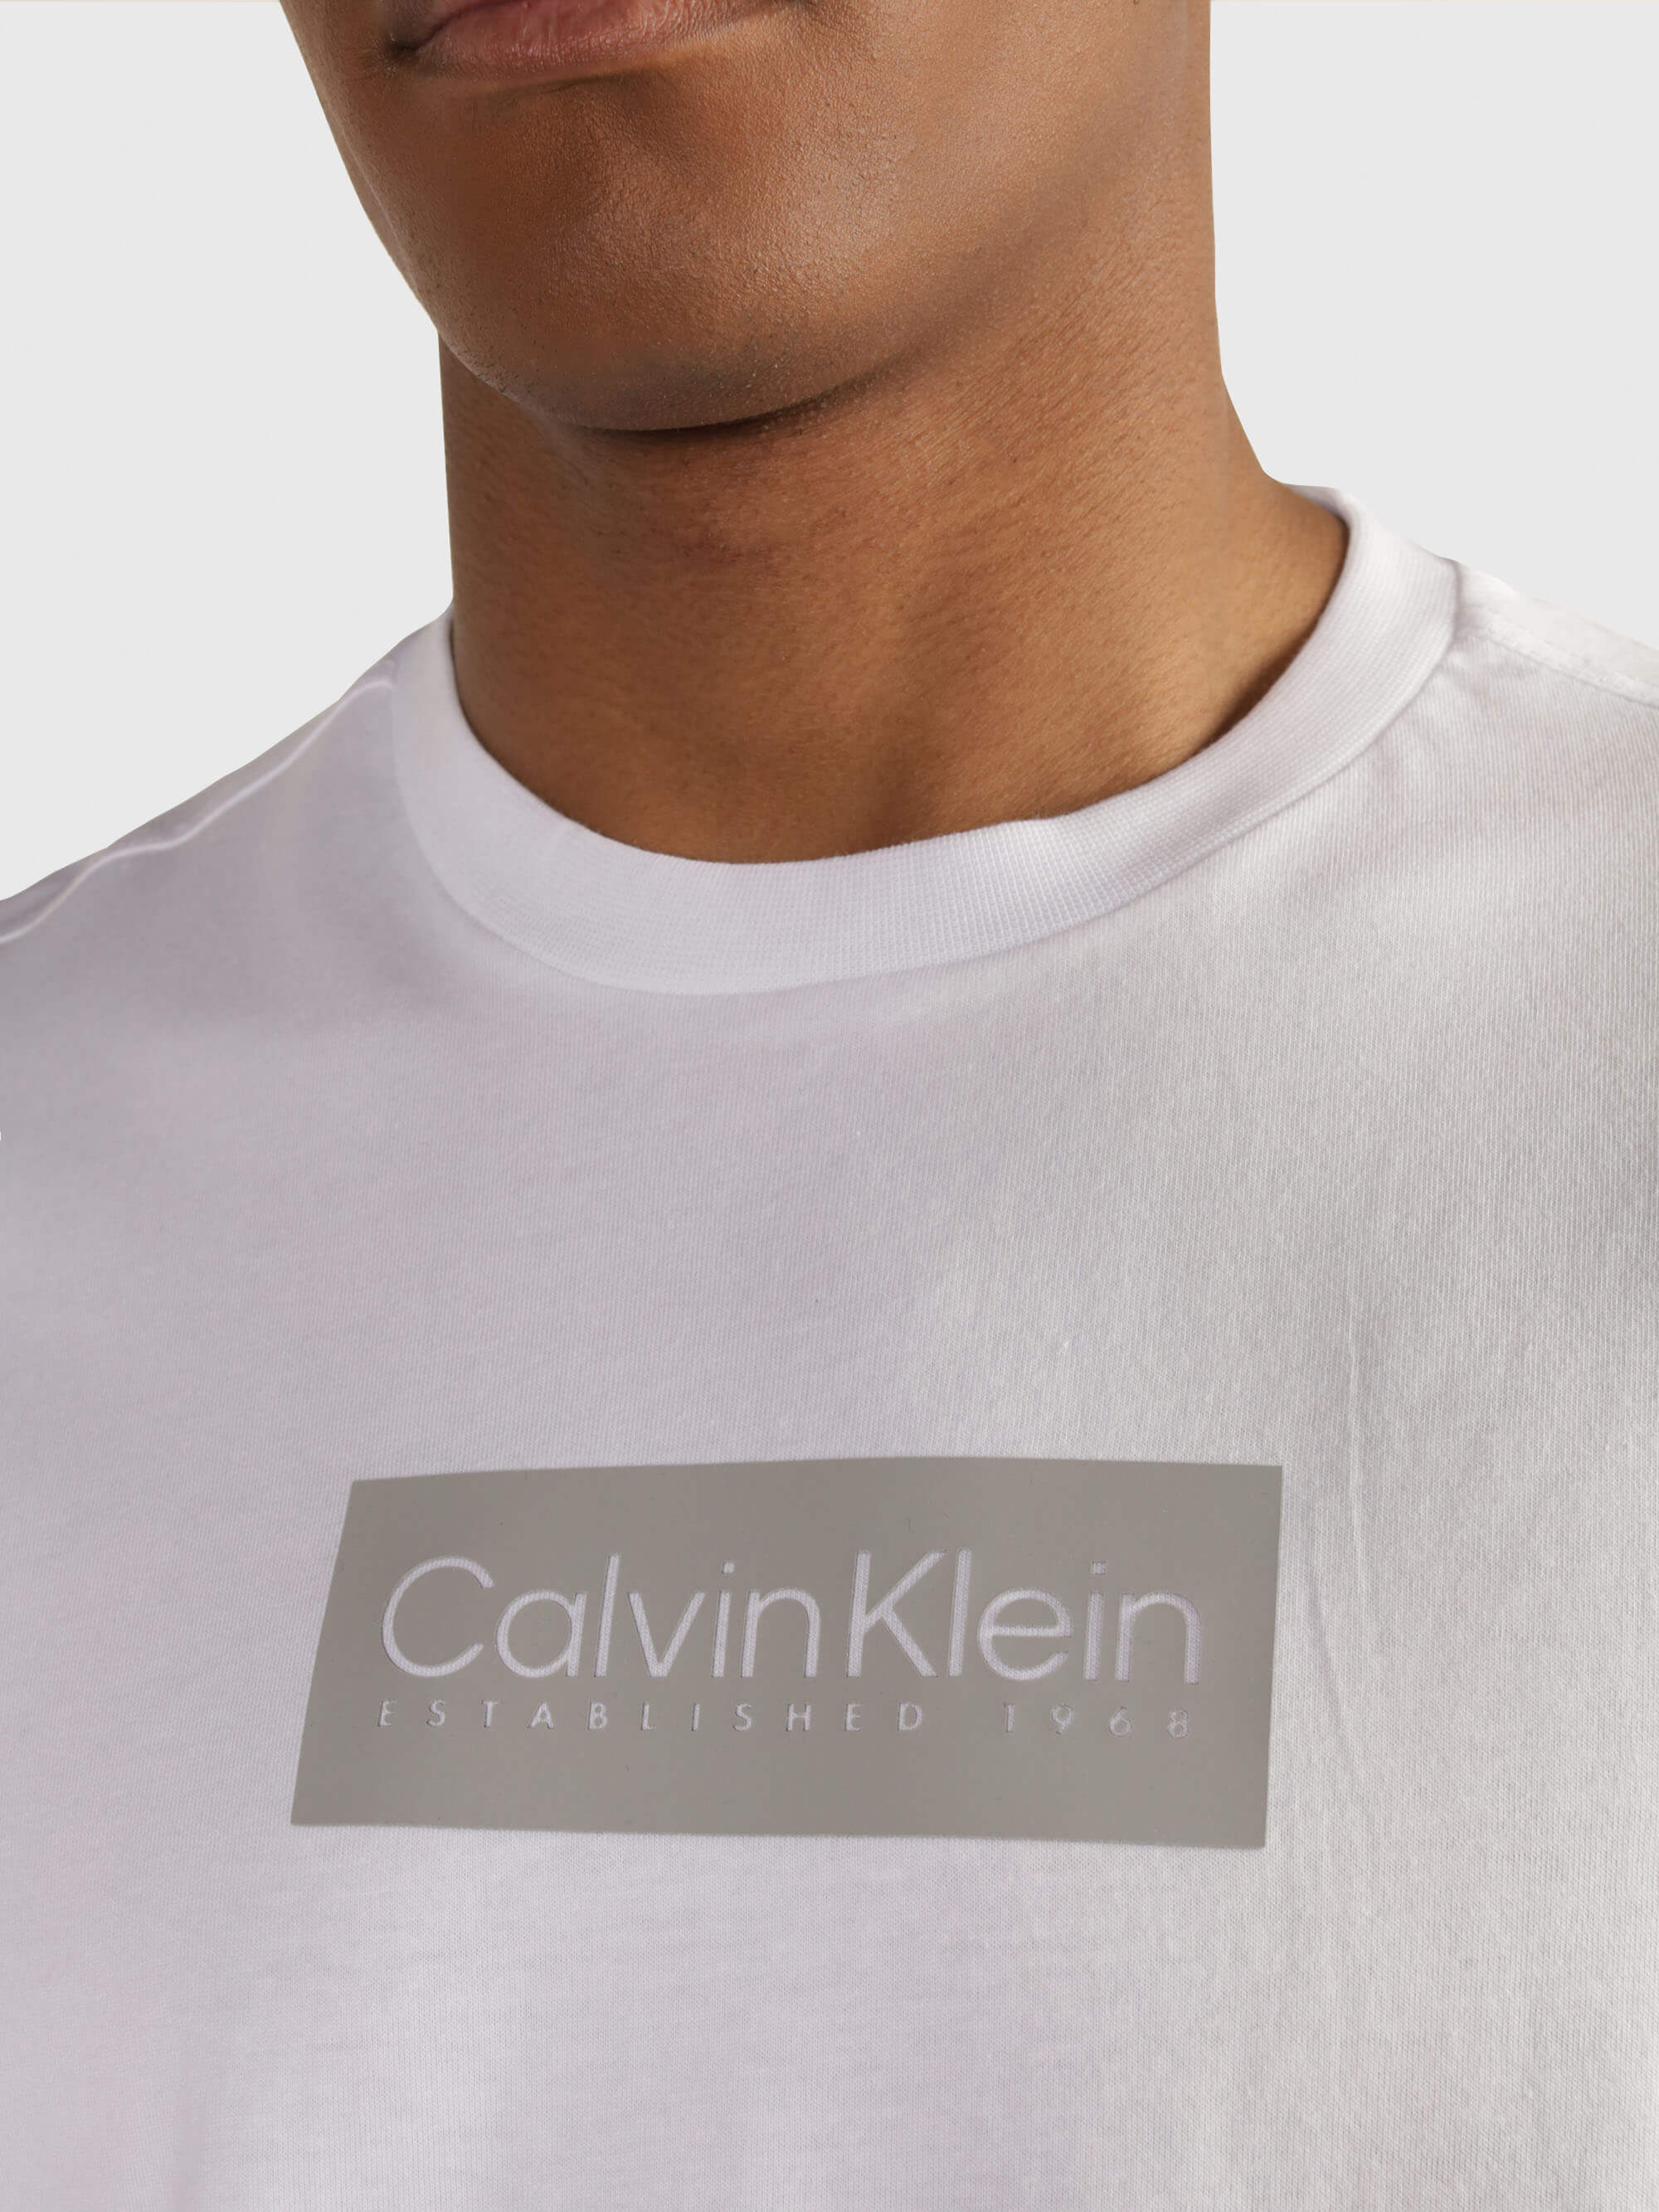 Playera Calvin Klein Logo Hombre Blanco